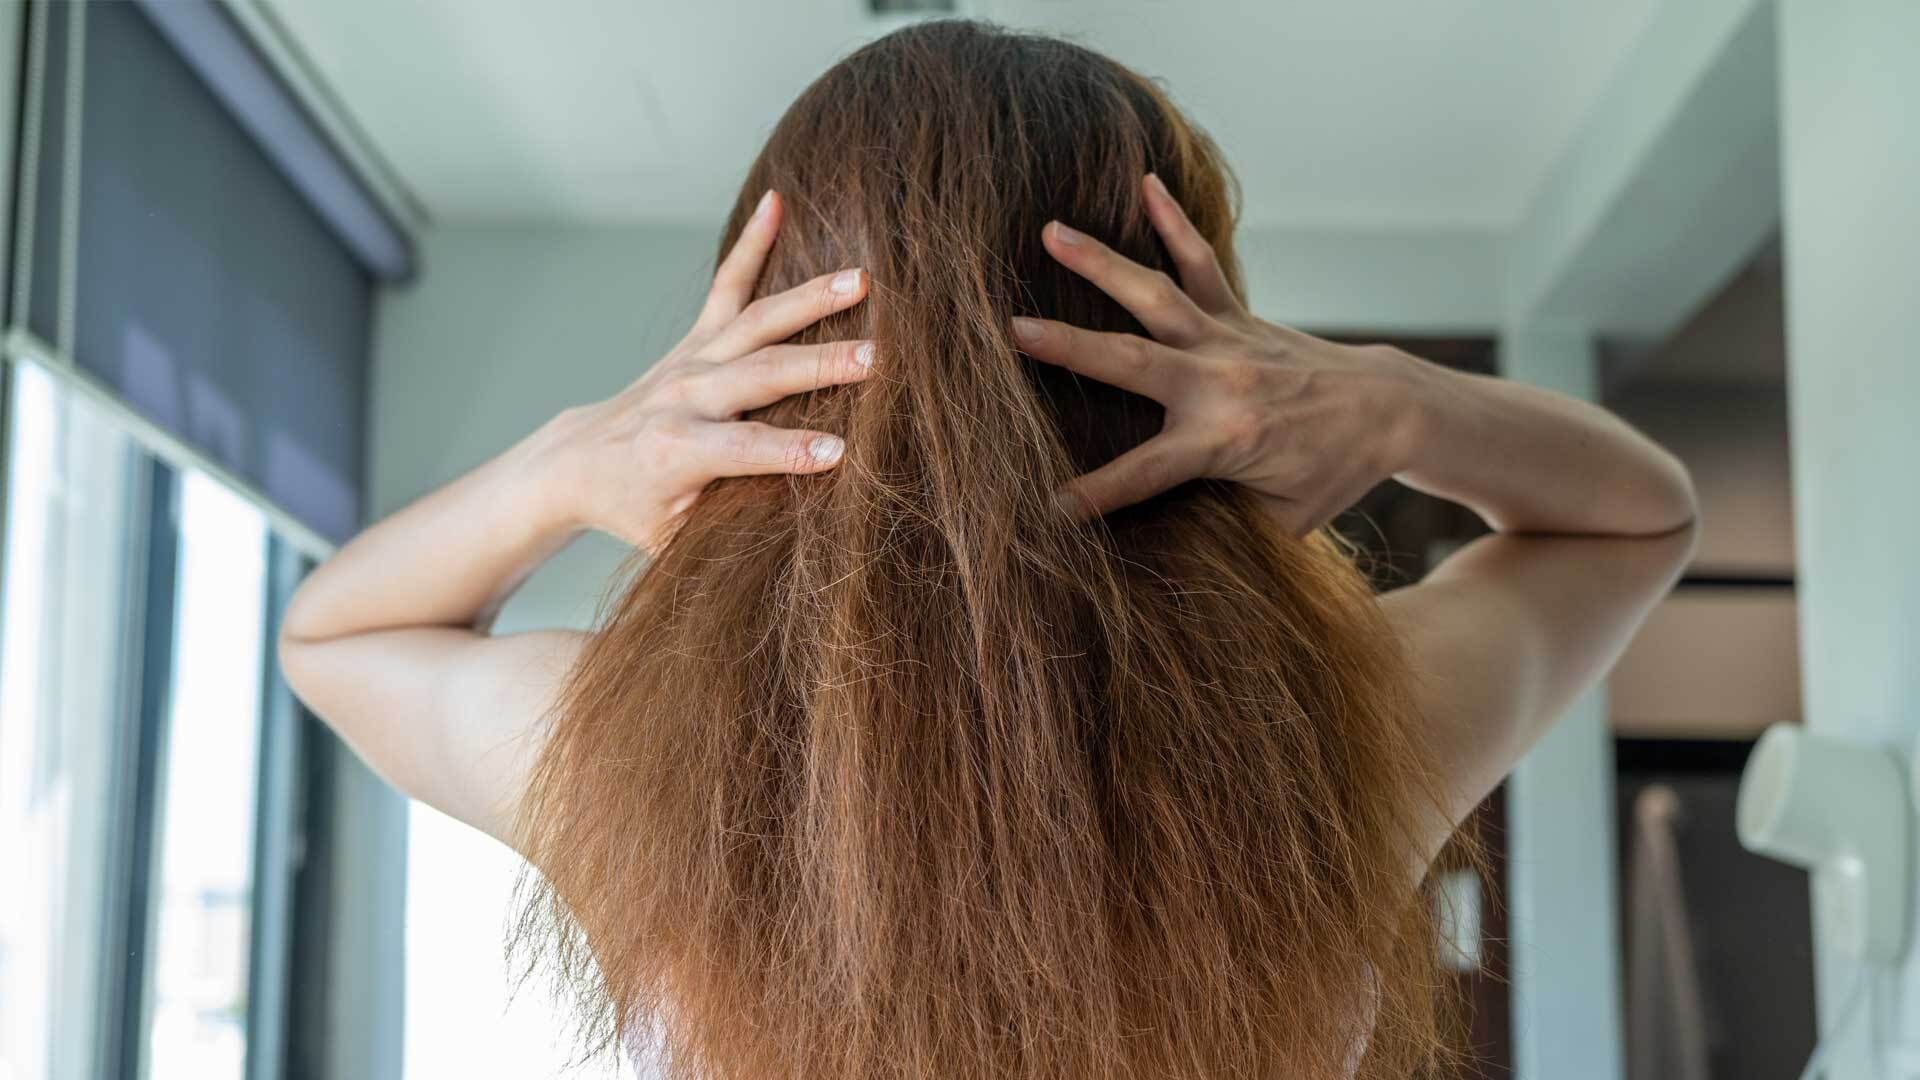 Saure Rinse: Der Geheimtipp für gesundes & glänzendes Haar?